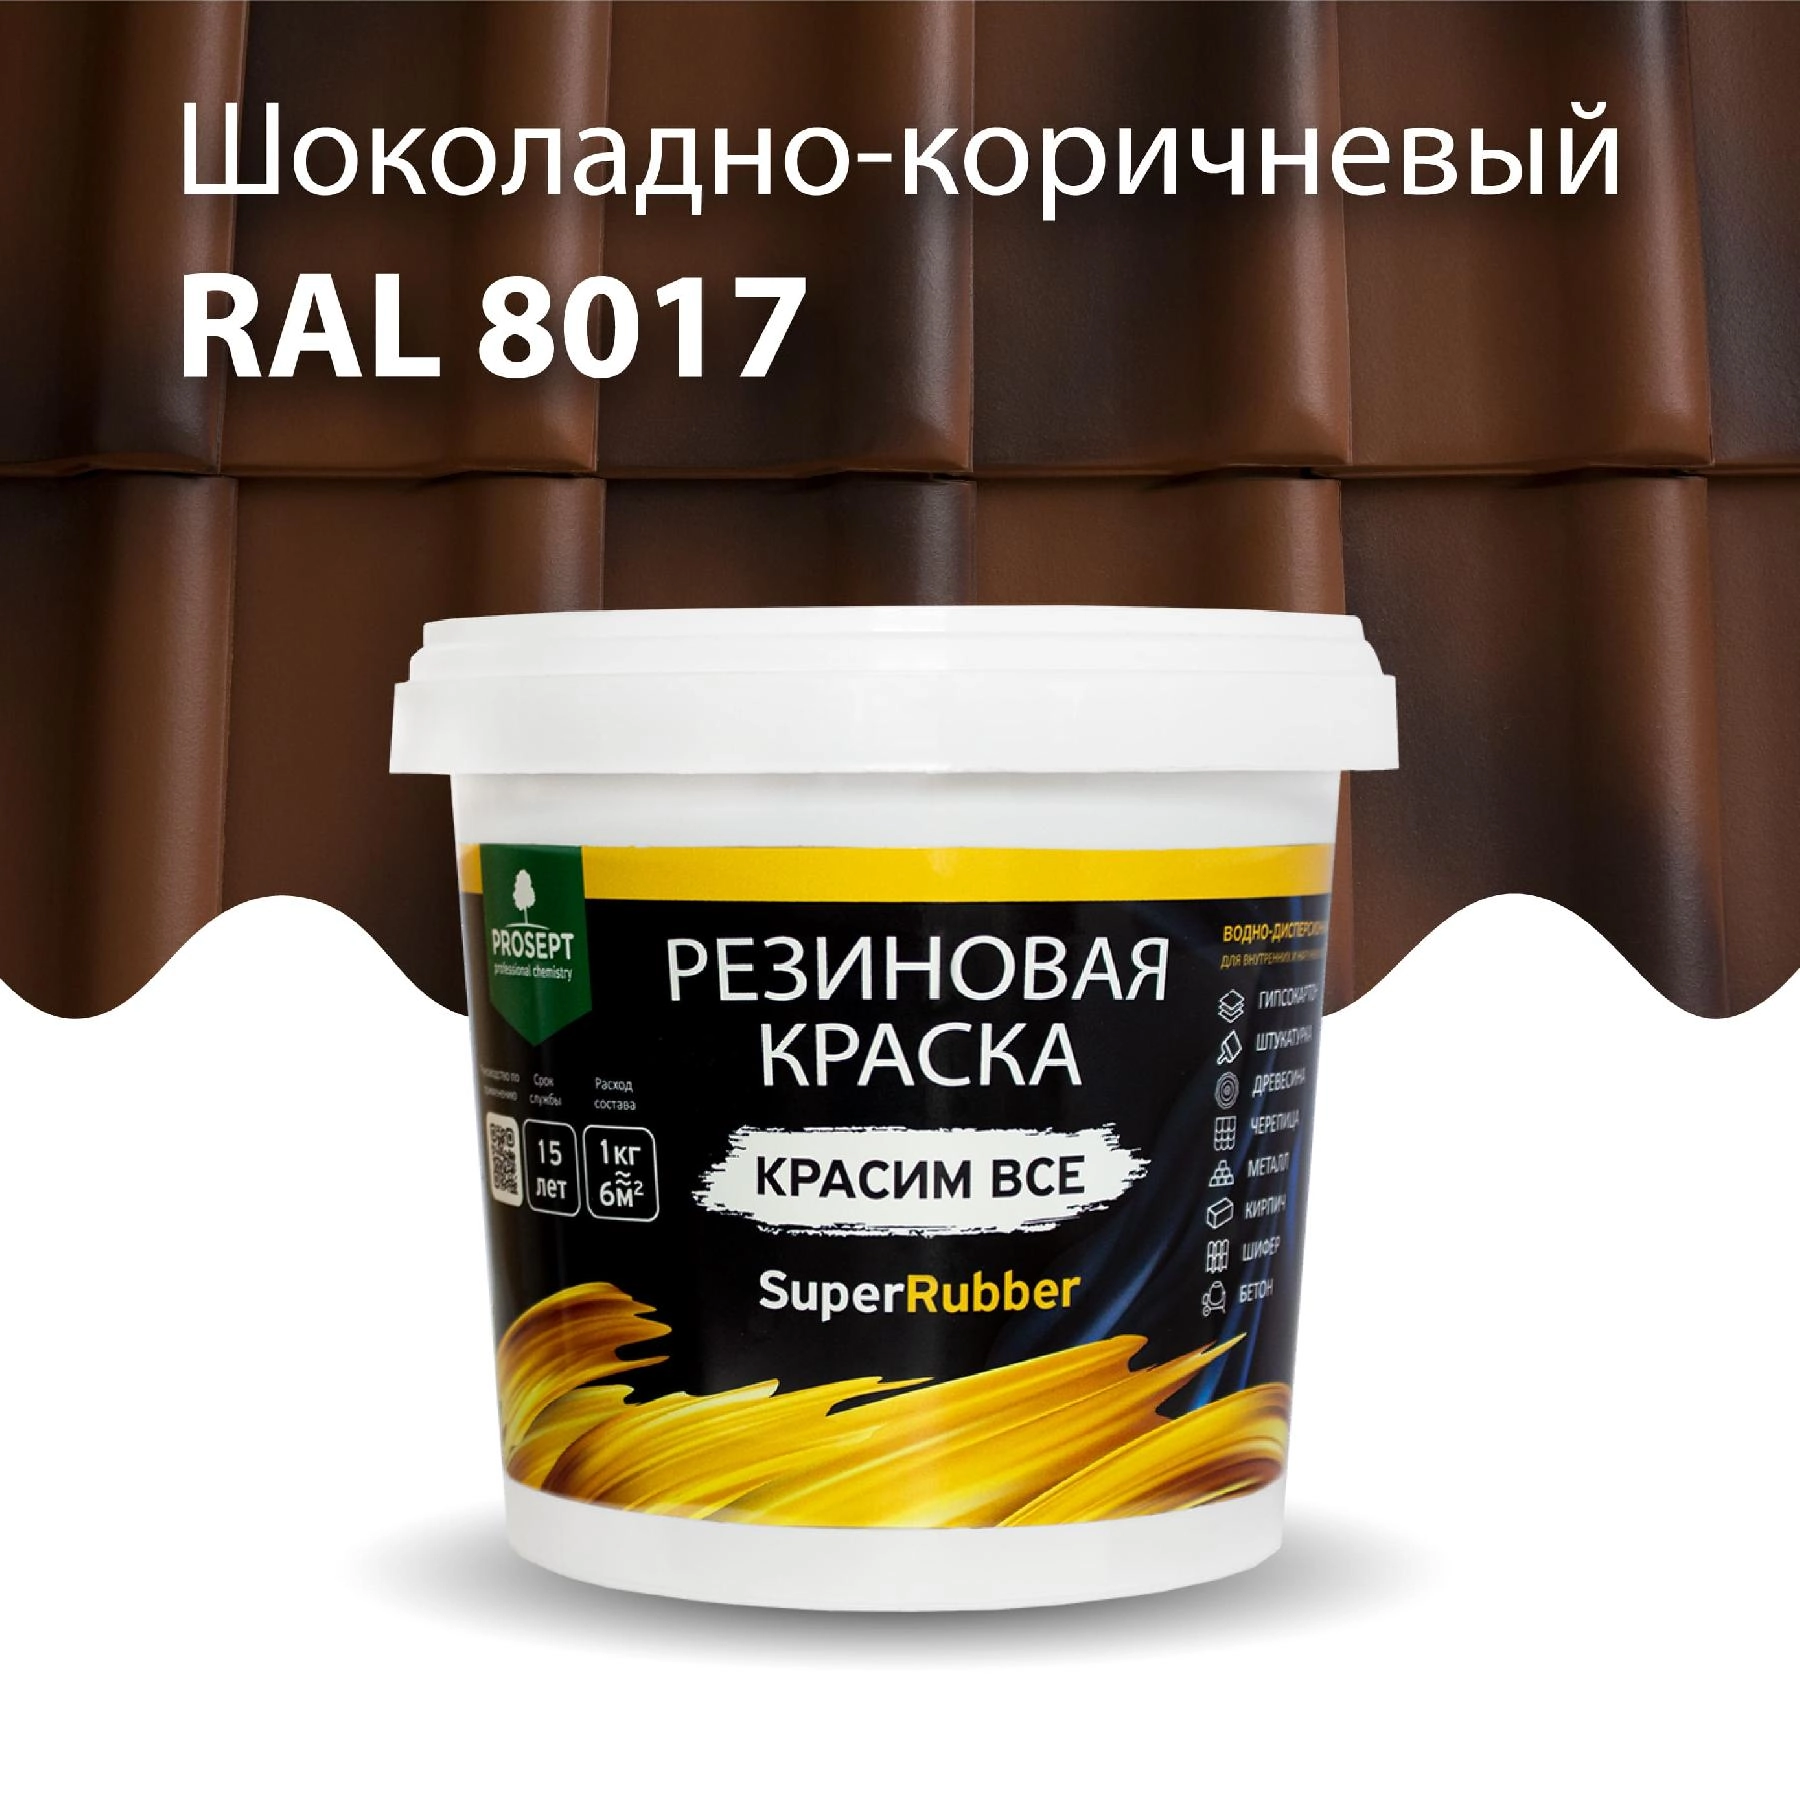 Краска резиновая PROSEPT SuperRubber, шоколадно-коричневый Ral 8017 / 3 кг